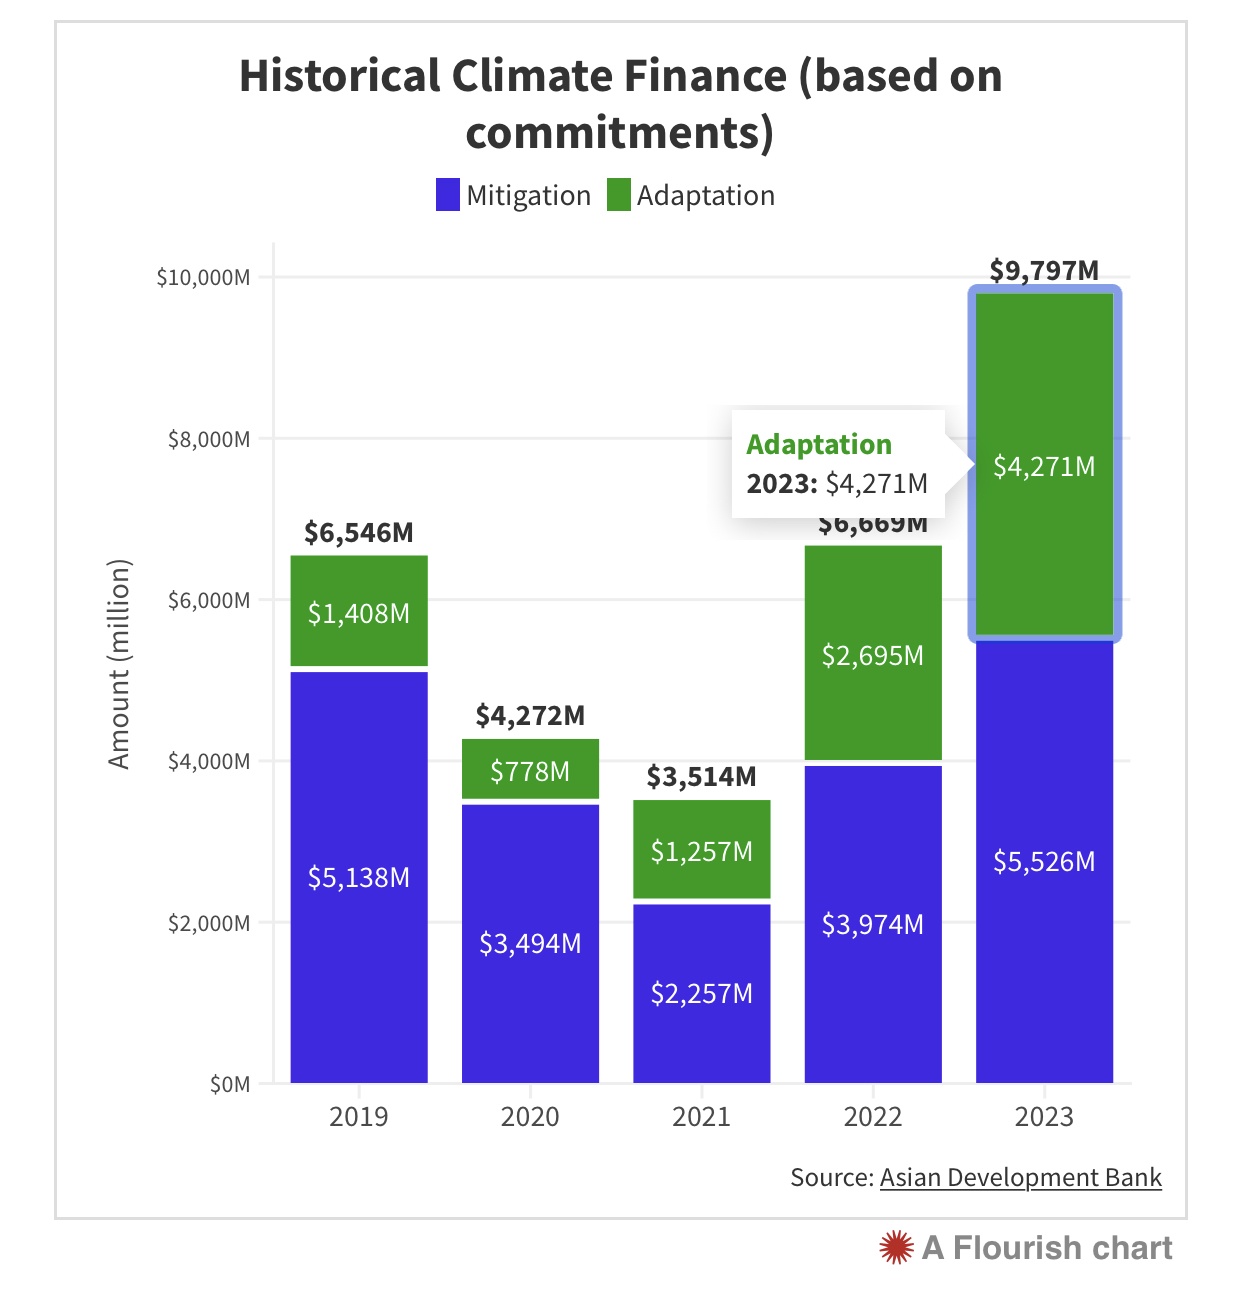 ADB đặt mục tiêu cung cấp 100 tỉ USD tài trợ khí hậu từ nguồn vốn riêng của ngân hàng trong giai đoạn từ năm 2019 tới 2030